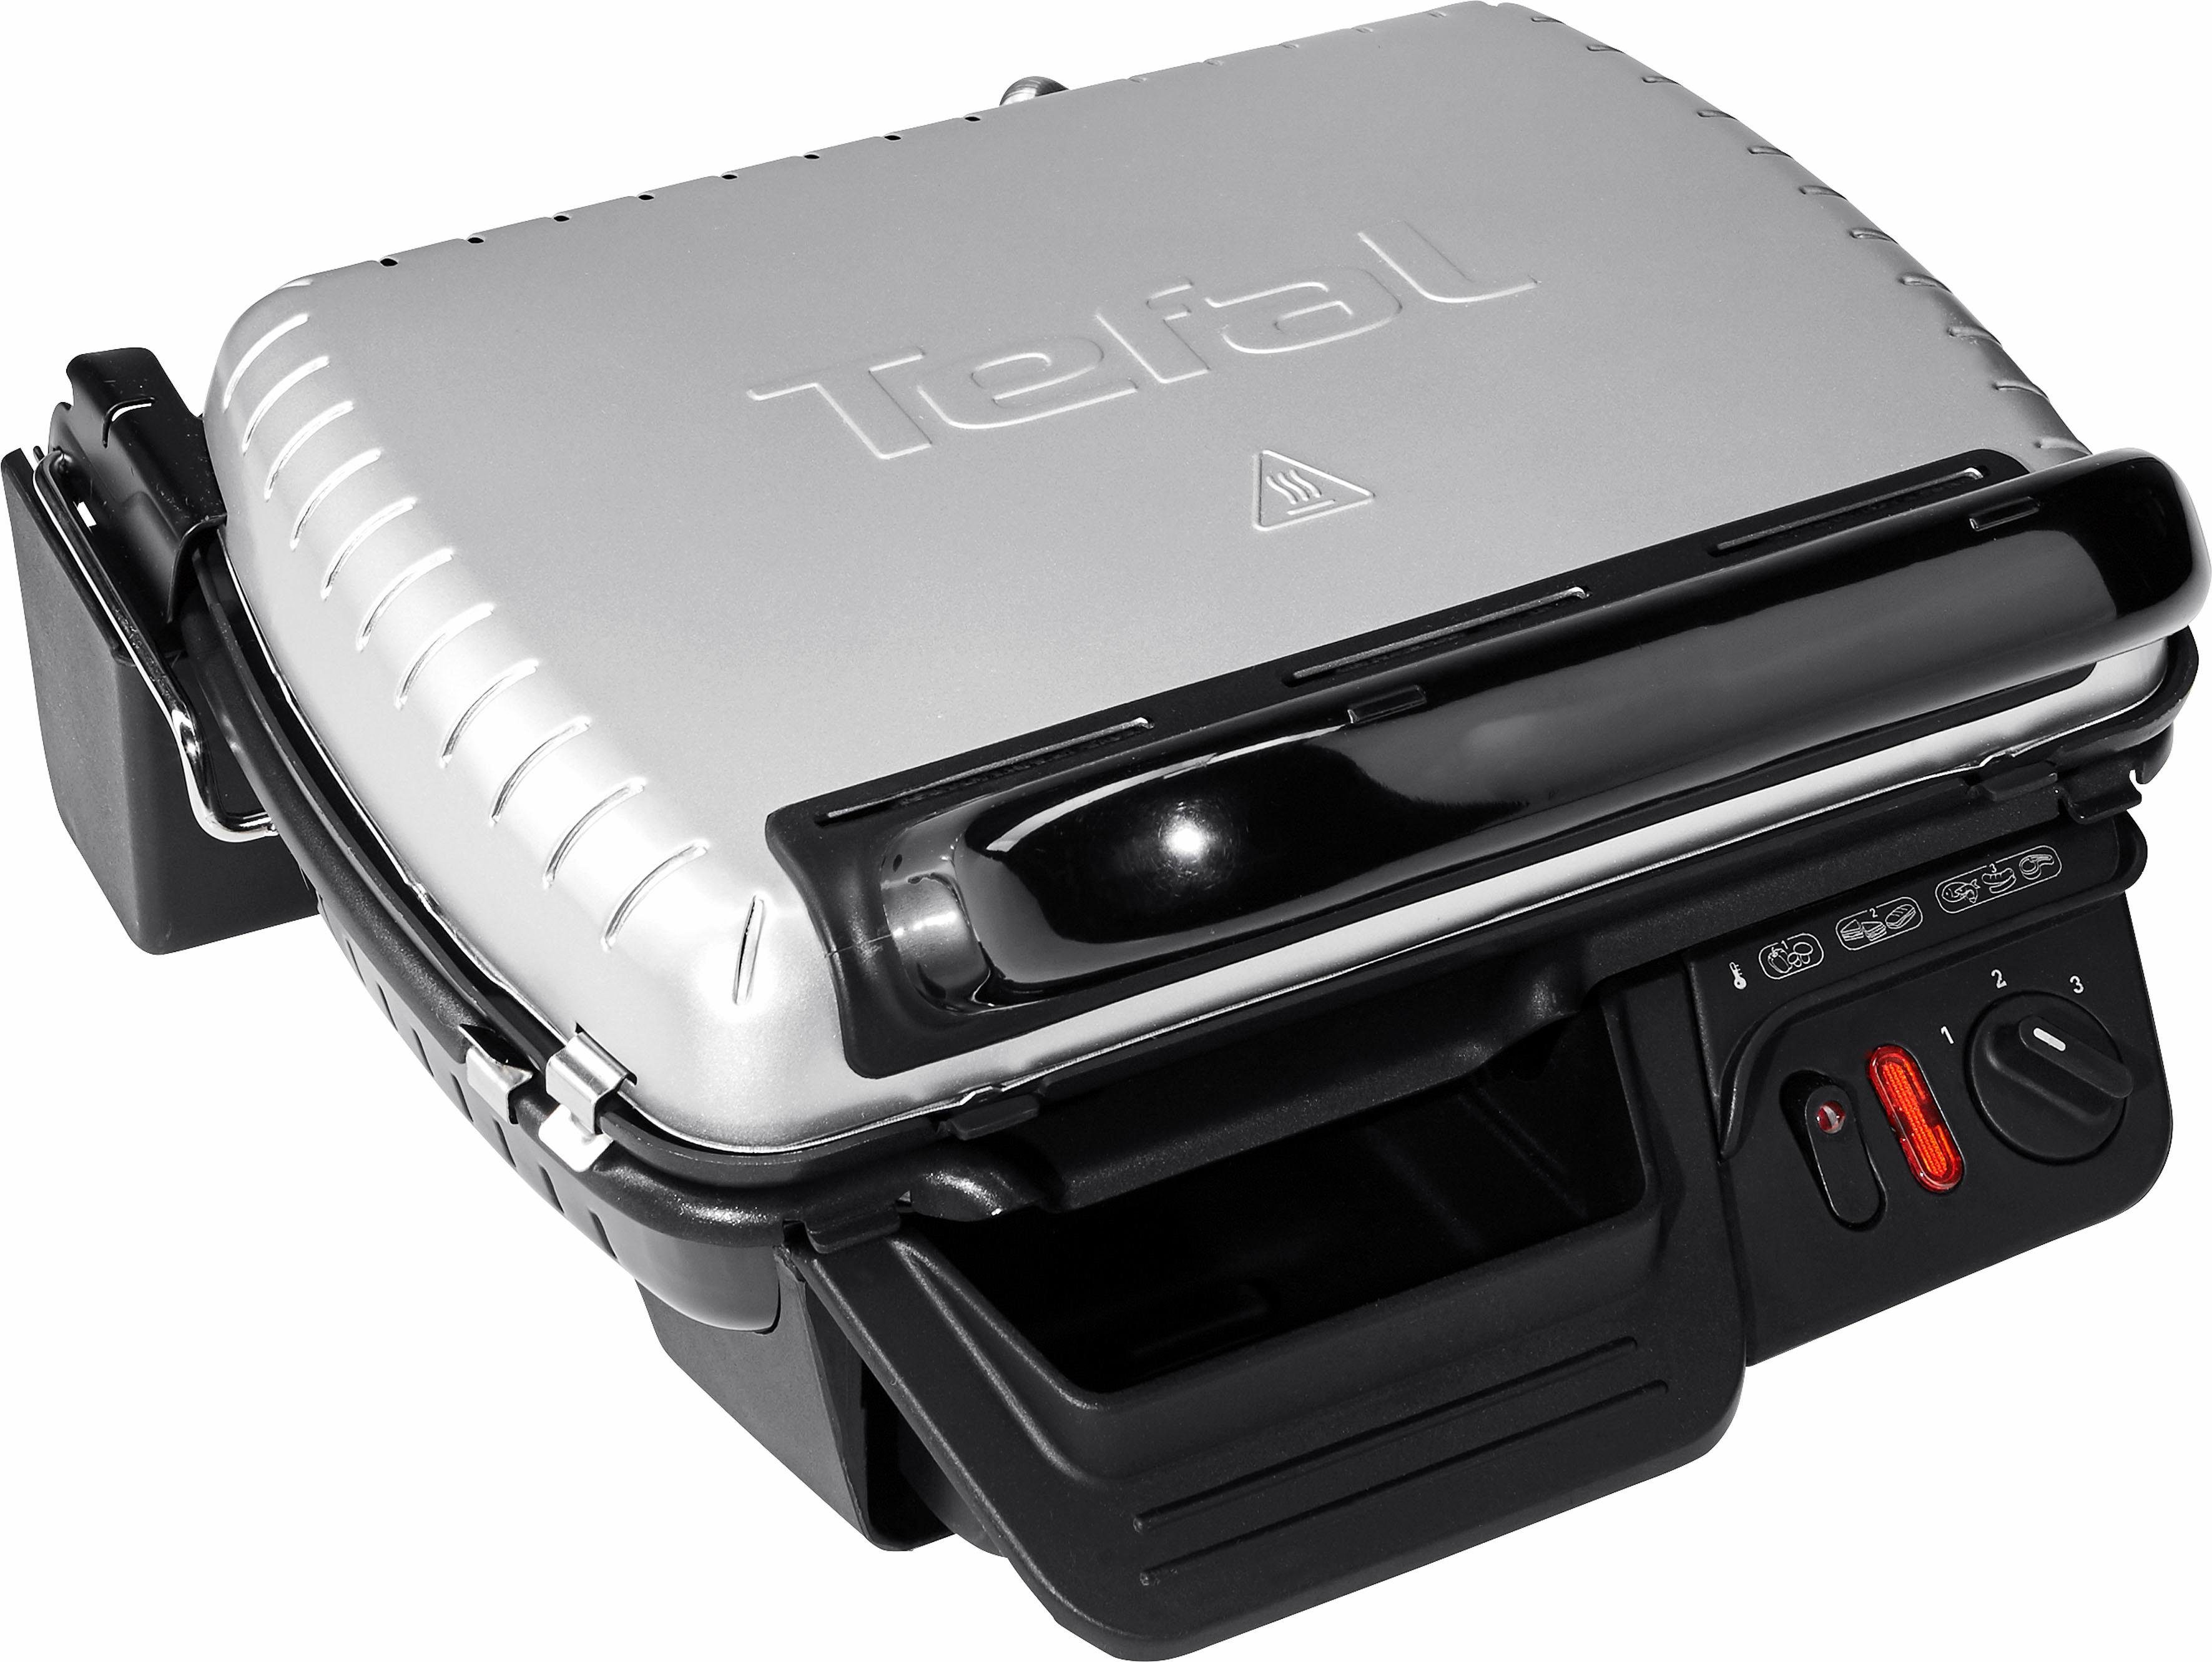 Tefal Kontaktgrill GC3050, 2000 W, Aufklappbar als Tischgrill/BBQ,  Regelbarer Thermostat, Antihaftbeschichtet online kaufen | OTTO